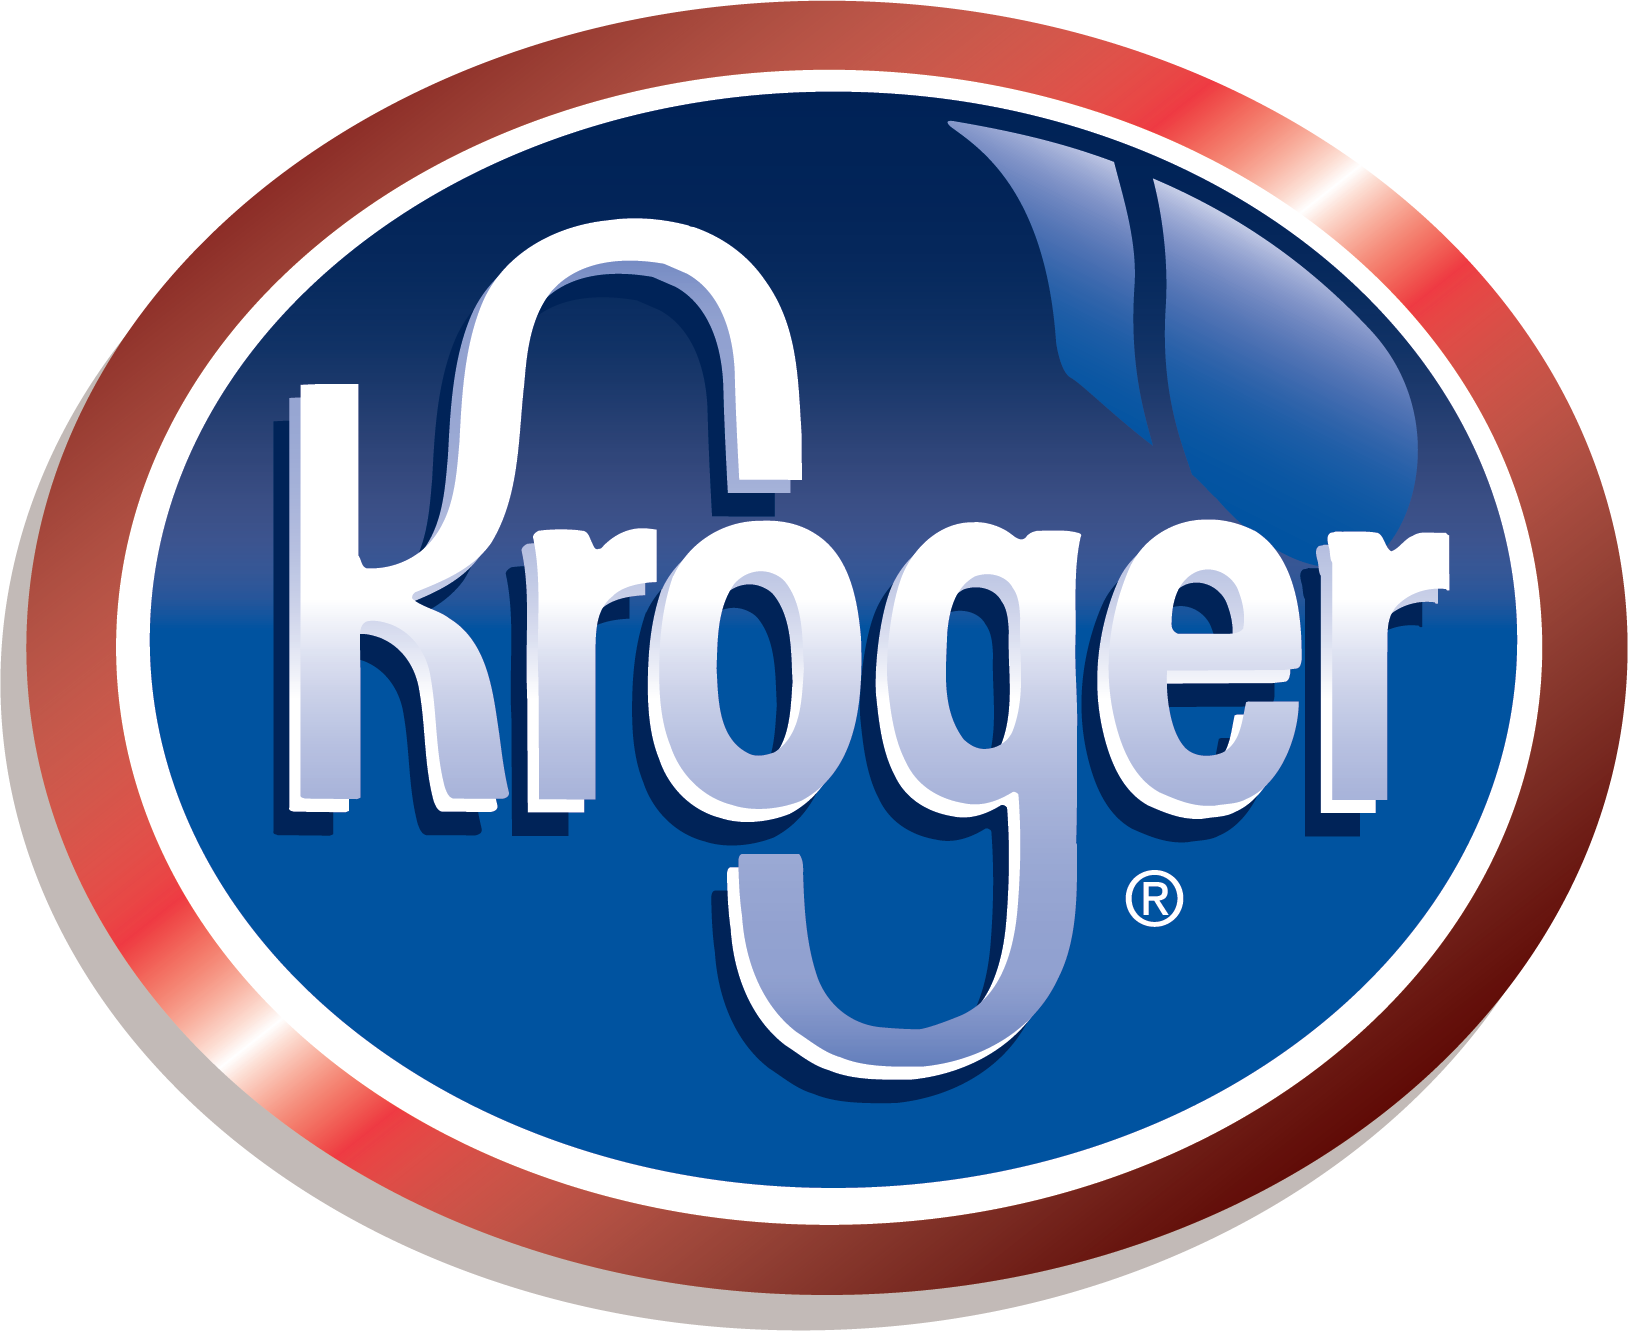 Kroger Logo PNG